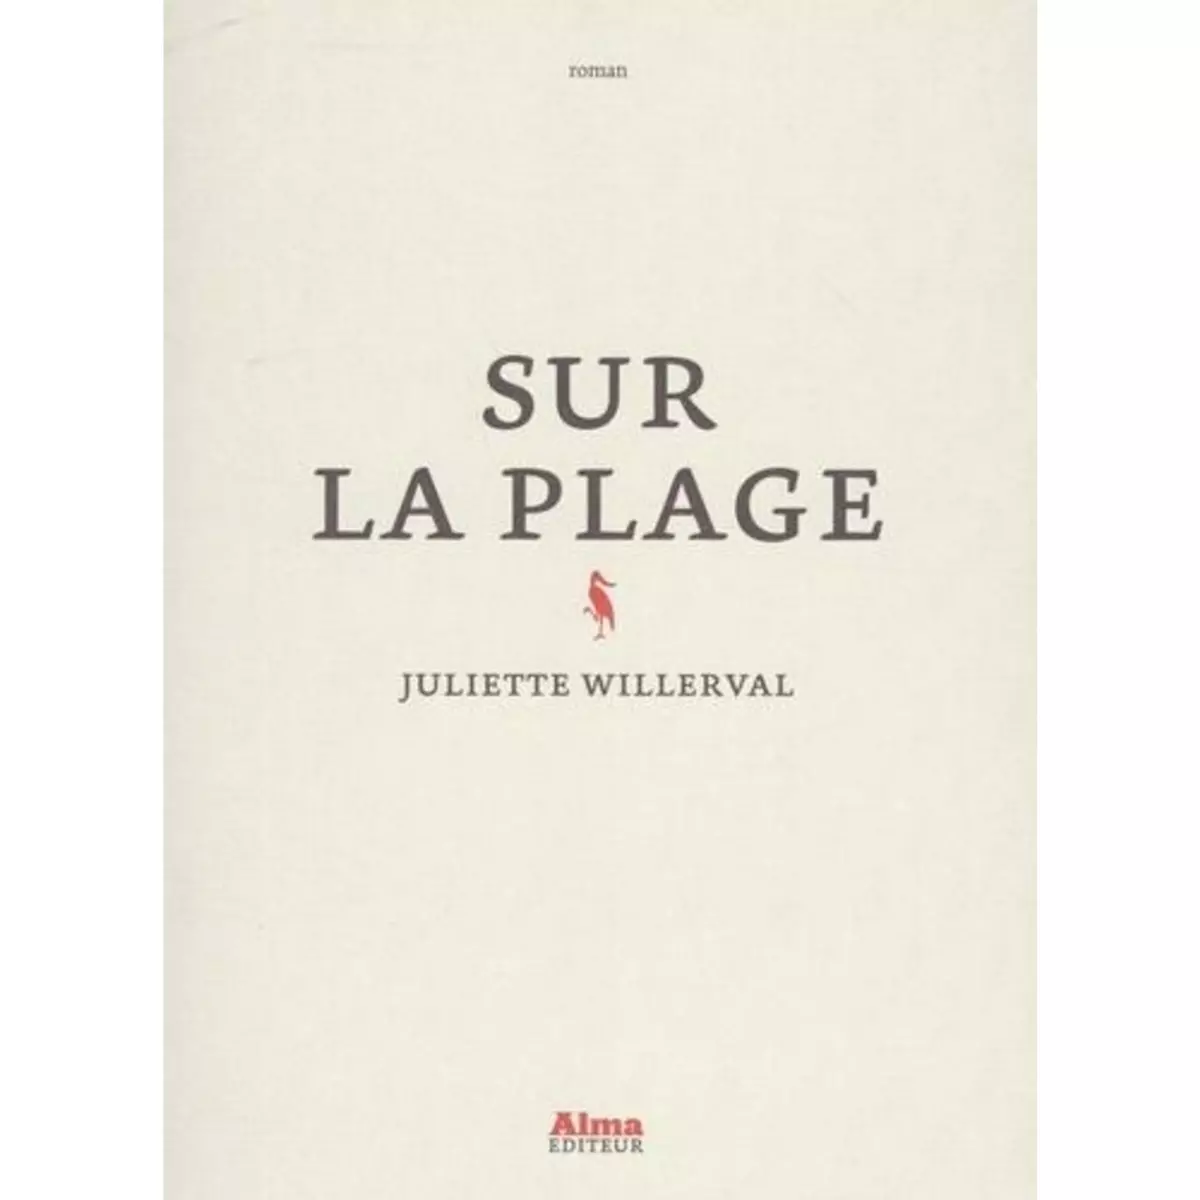  SUR LA PLAGE, Willerval Juliette